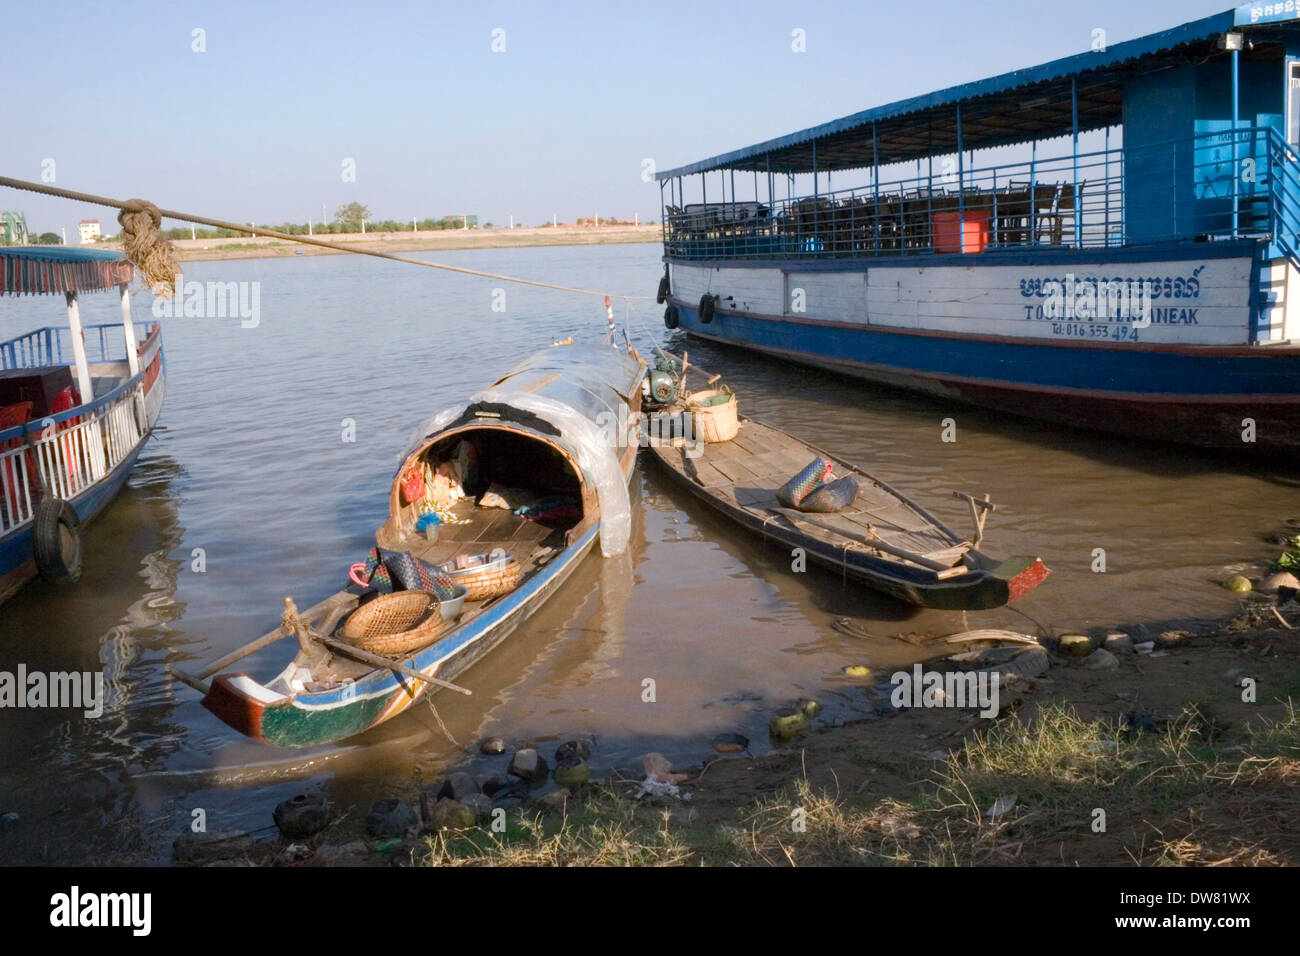 Bateaux de pêche en bois sont amarrés à côté de bateaux de croisière touristique au bord du Mékong à Phnom Penh, Cambodge. Banque D'Images